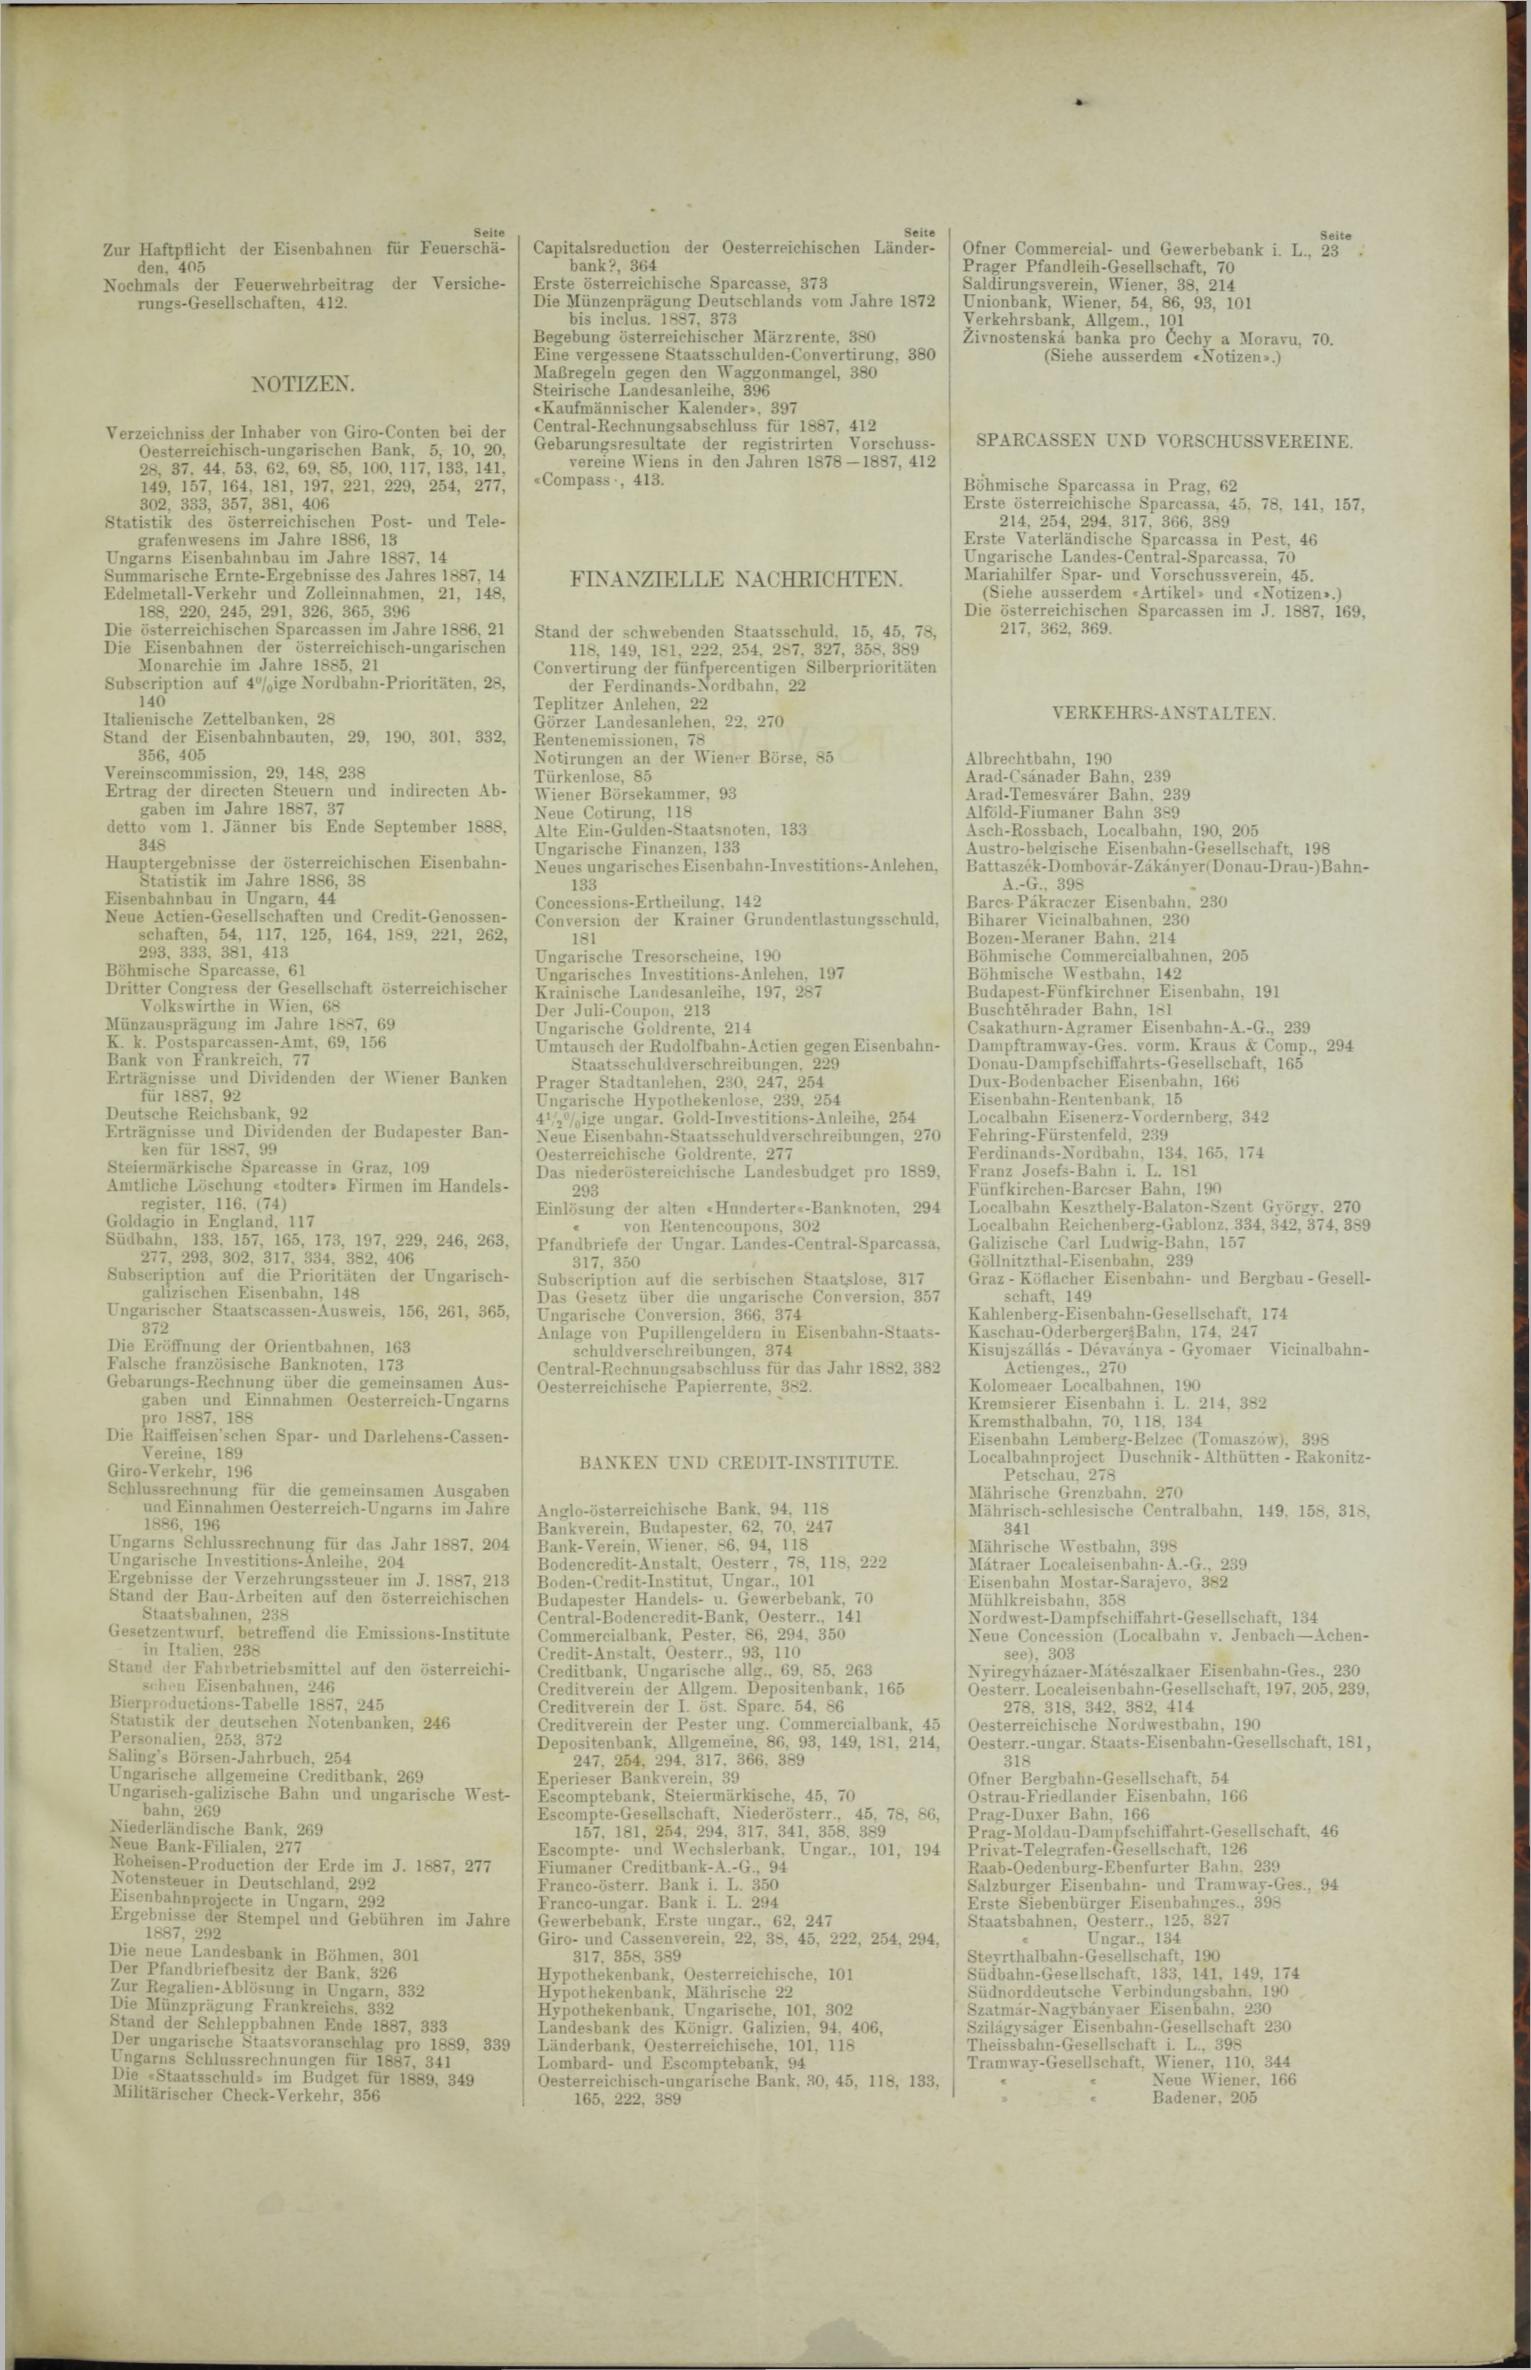 Der Tresor 15.03.1888 - Seite 11